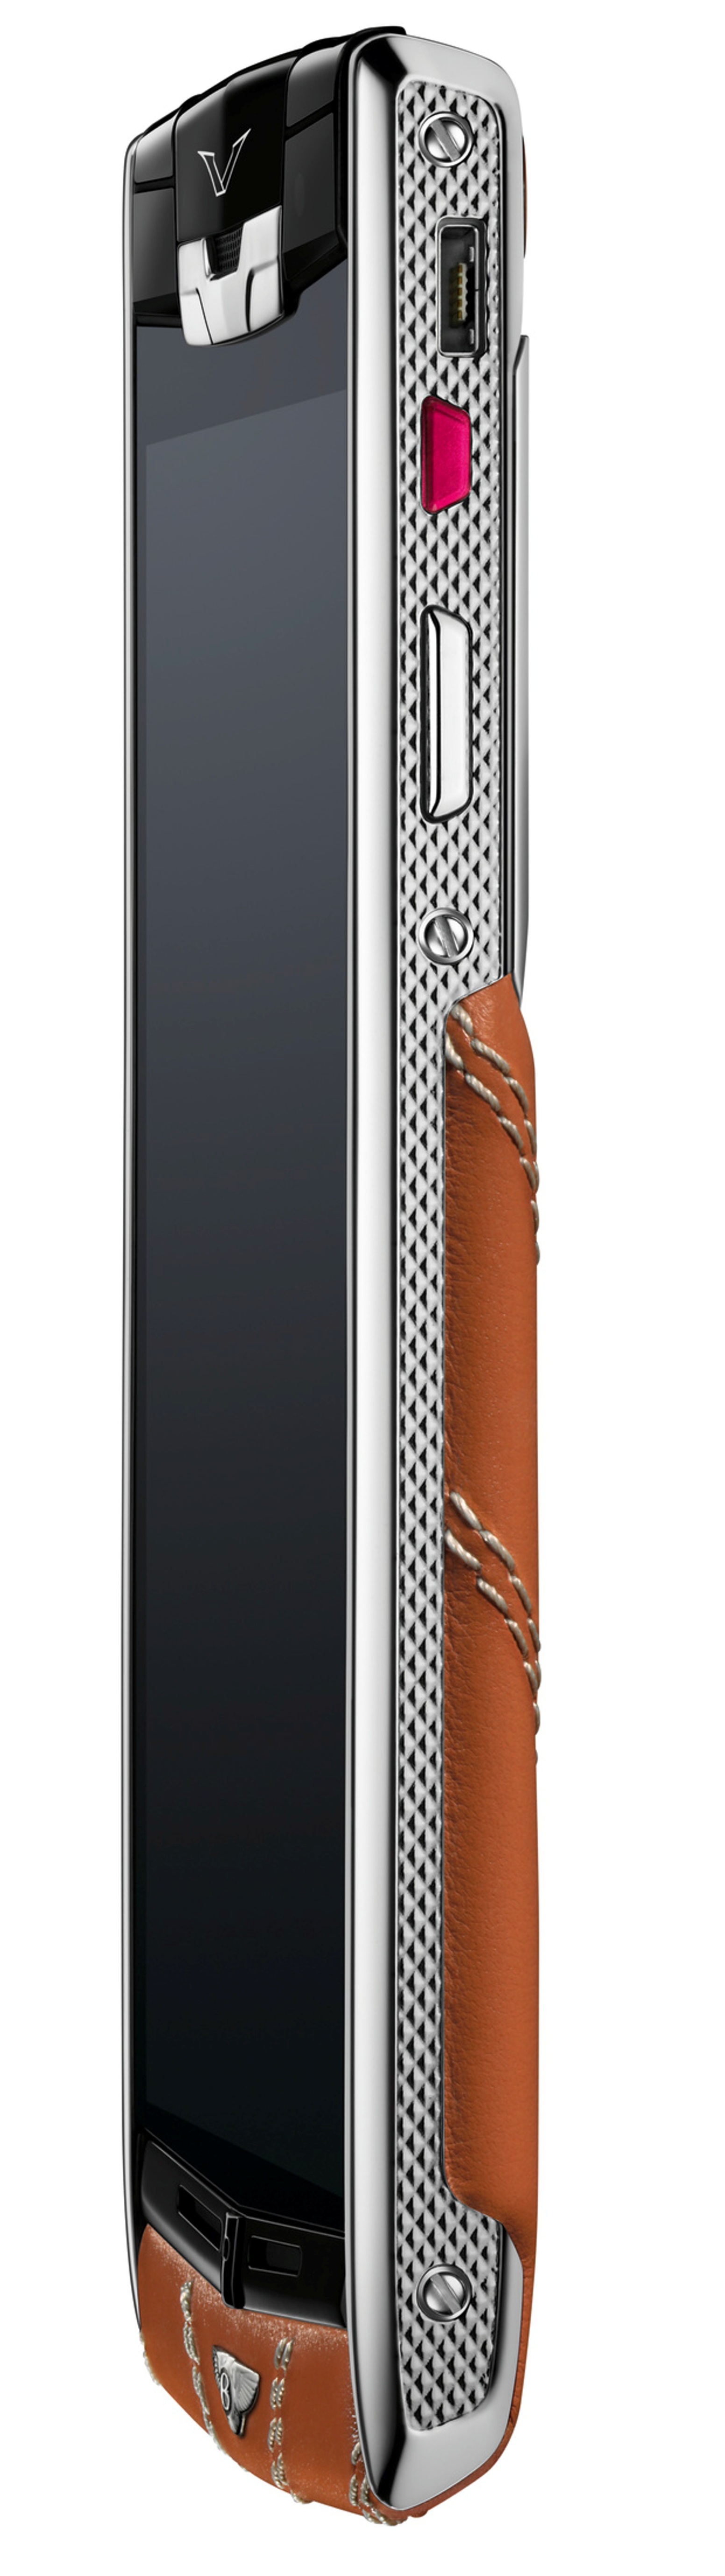 Bentley dan Vertu terhubung ke smartphone edisi khusus 6